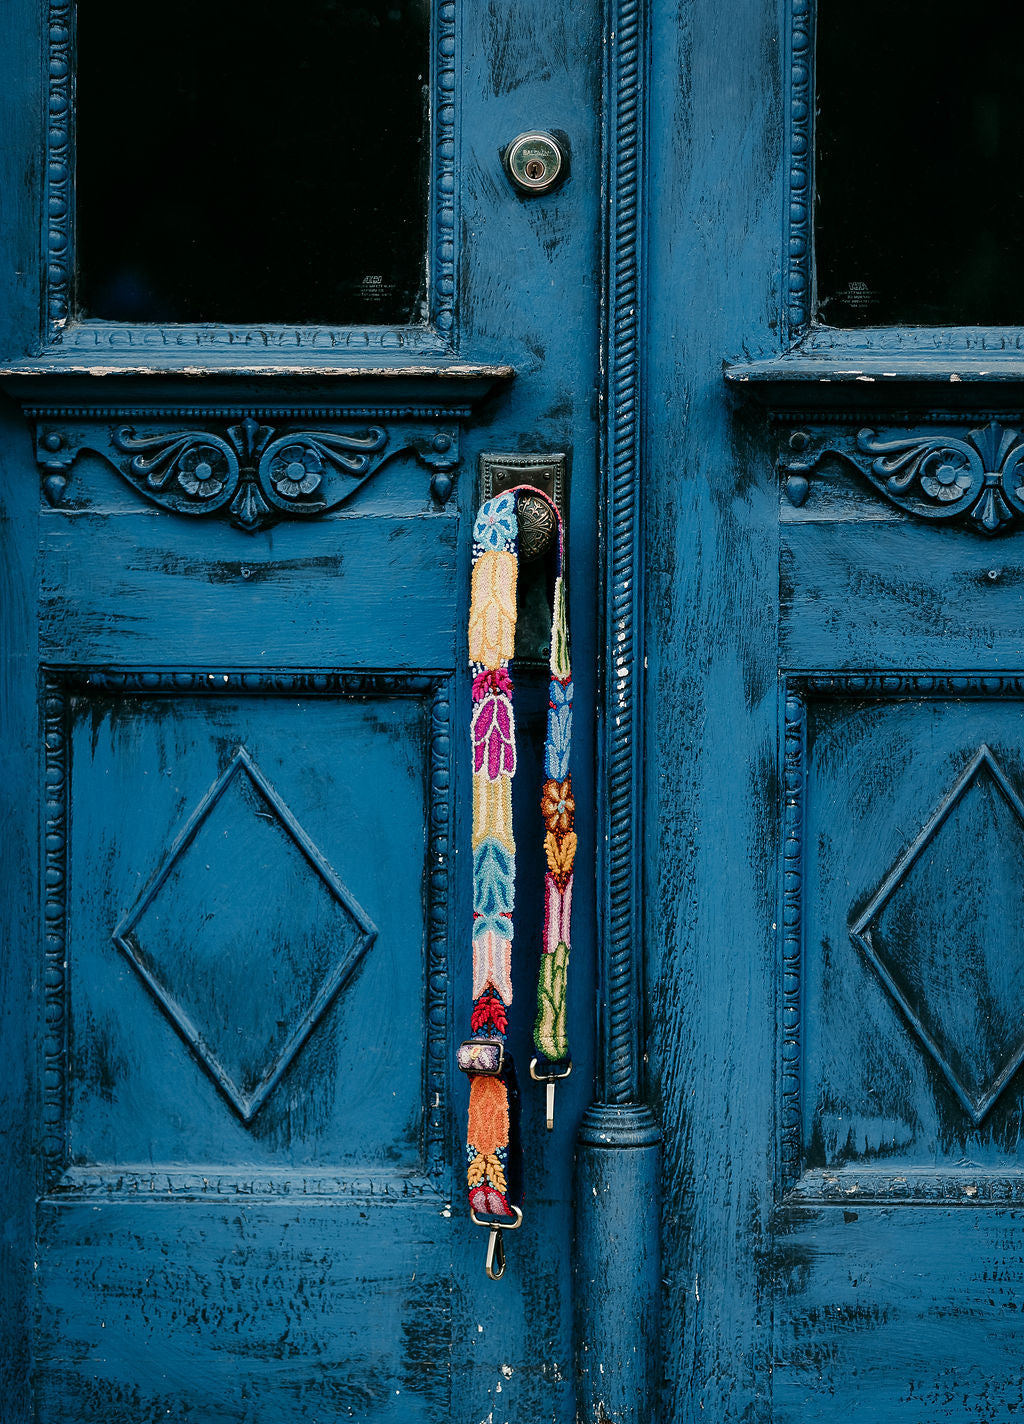 Navy Floral Adjustable Strap displayed hanging around the doorknob of a blue door.